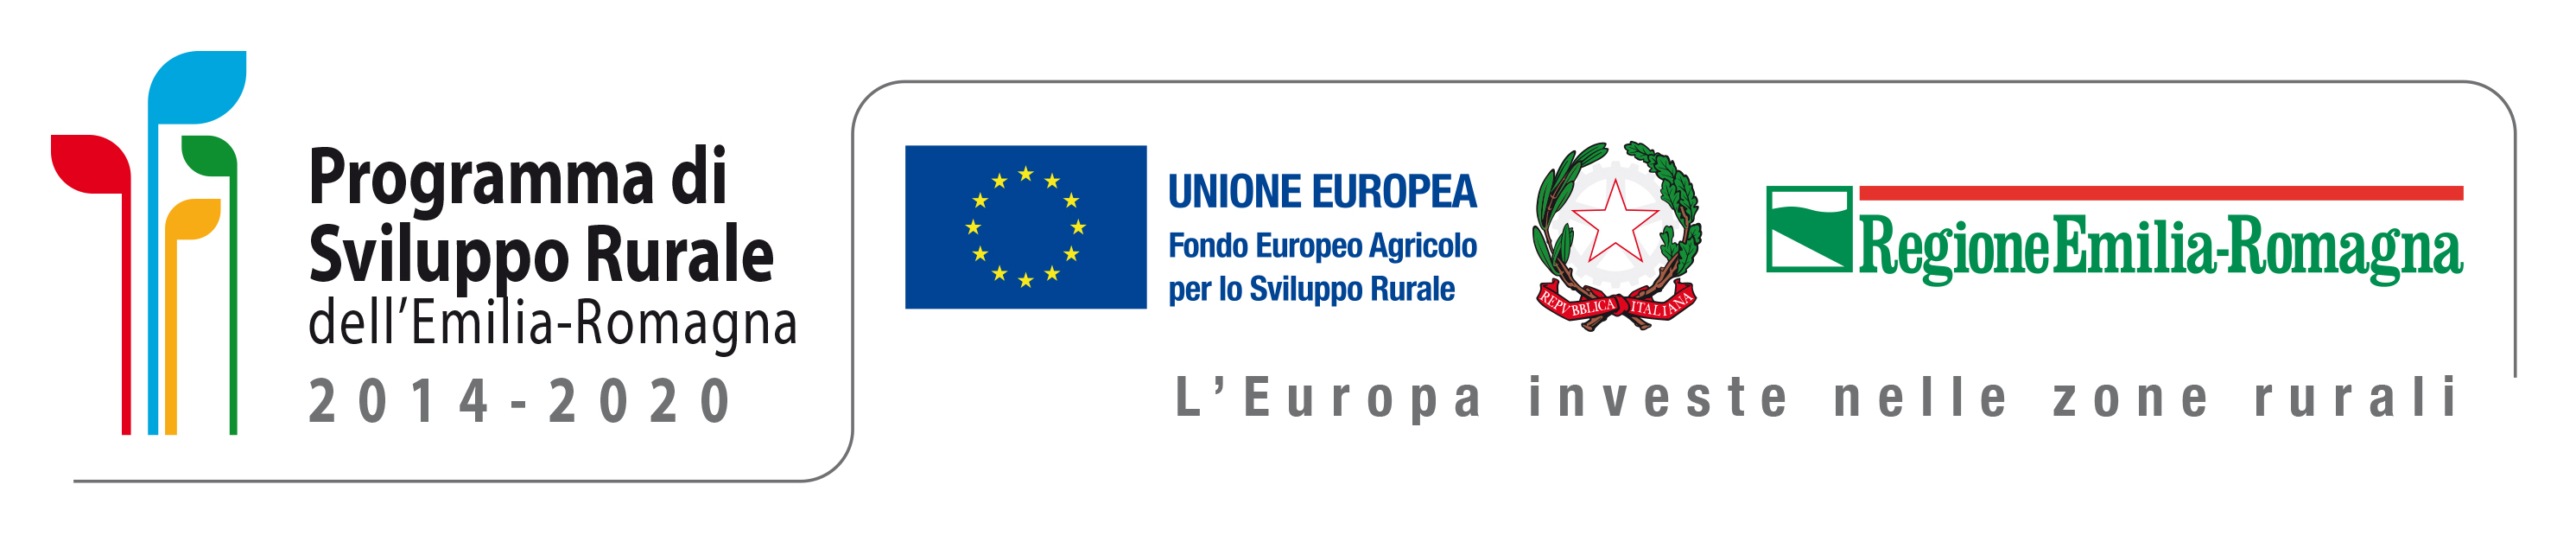 https://agricoltura.regione.emilia-romagna.it/psr-2014-2020/doc/loghi-e-obblighi-di-comunicazione/loghi/unione-dei-loghi-per-attivita-di-comunicazione-psr-2014-2020